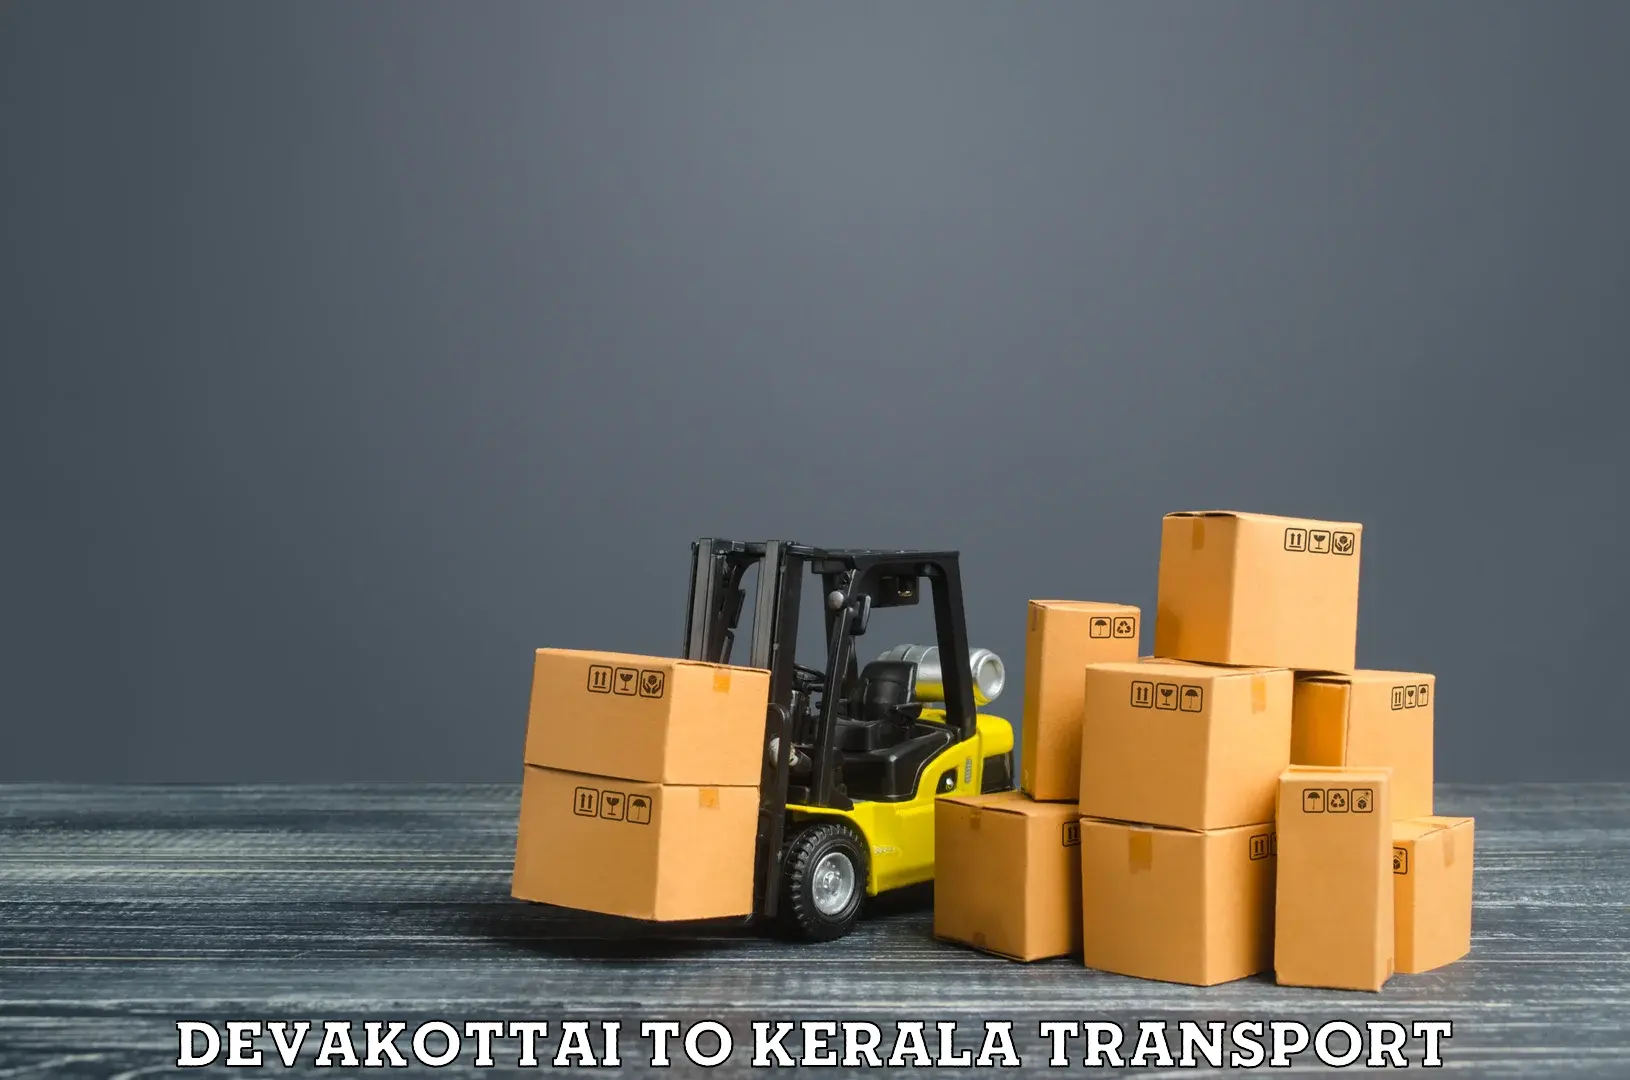 Interstate transport services Devakottai to Thalassery